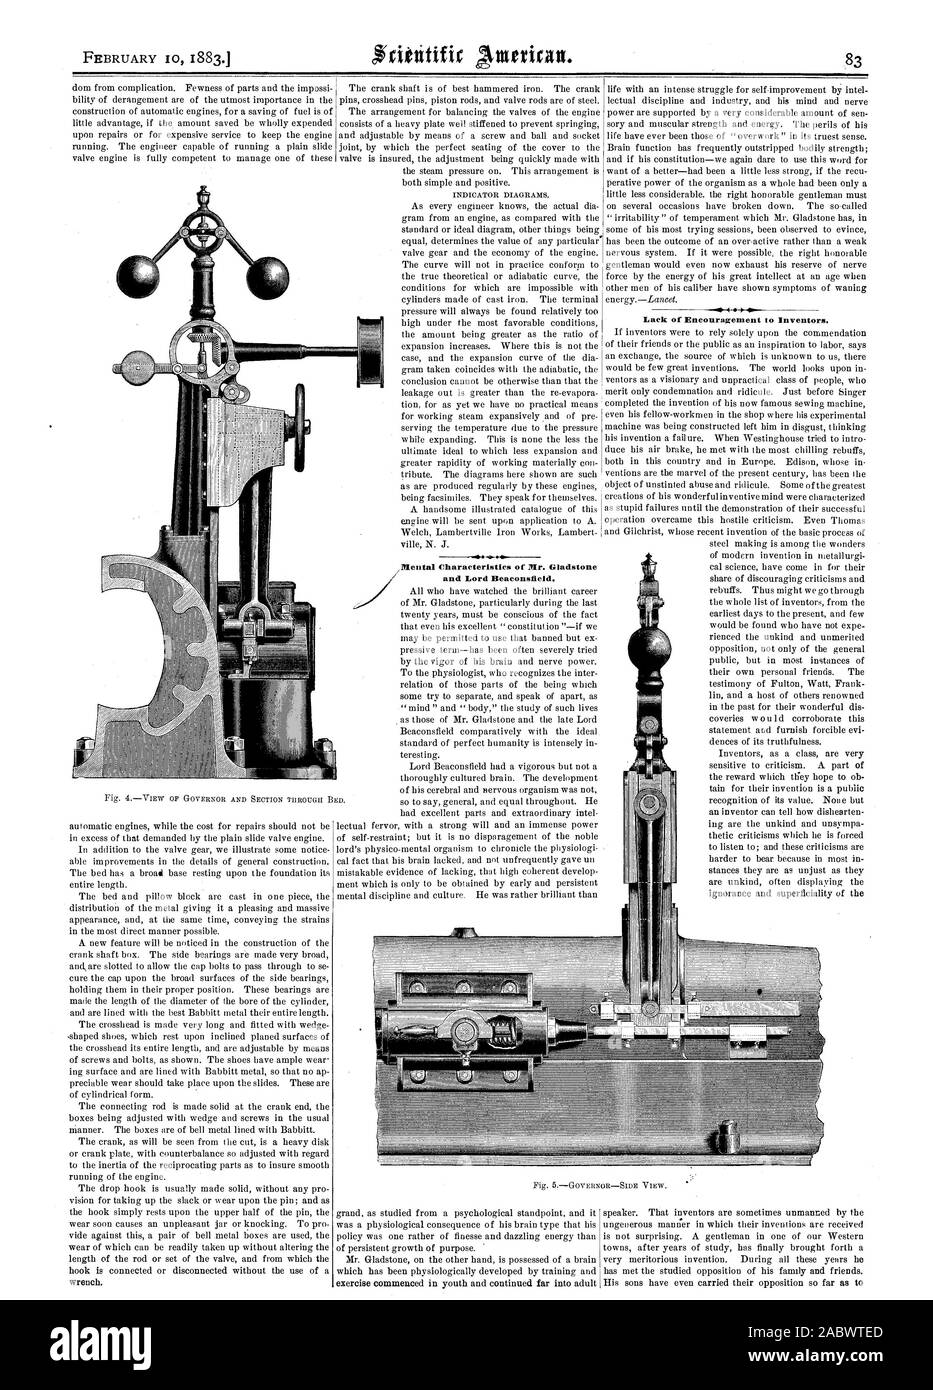 Febrero de 18831J Itlental características de Ir. Gladstone y Lord Beaconsfield. Falta de aliento para los inventores, Scientific American, 1883-02-10 Foto de stock